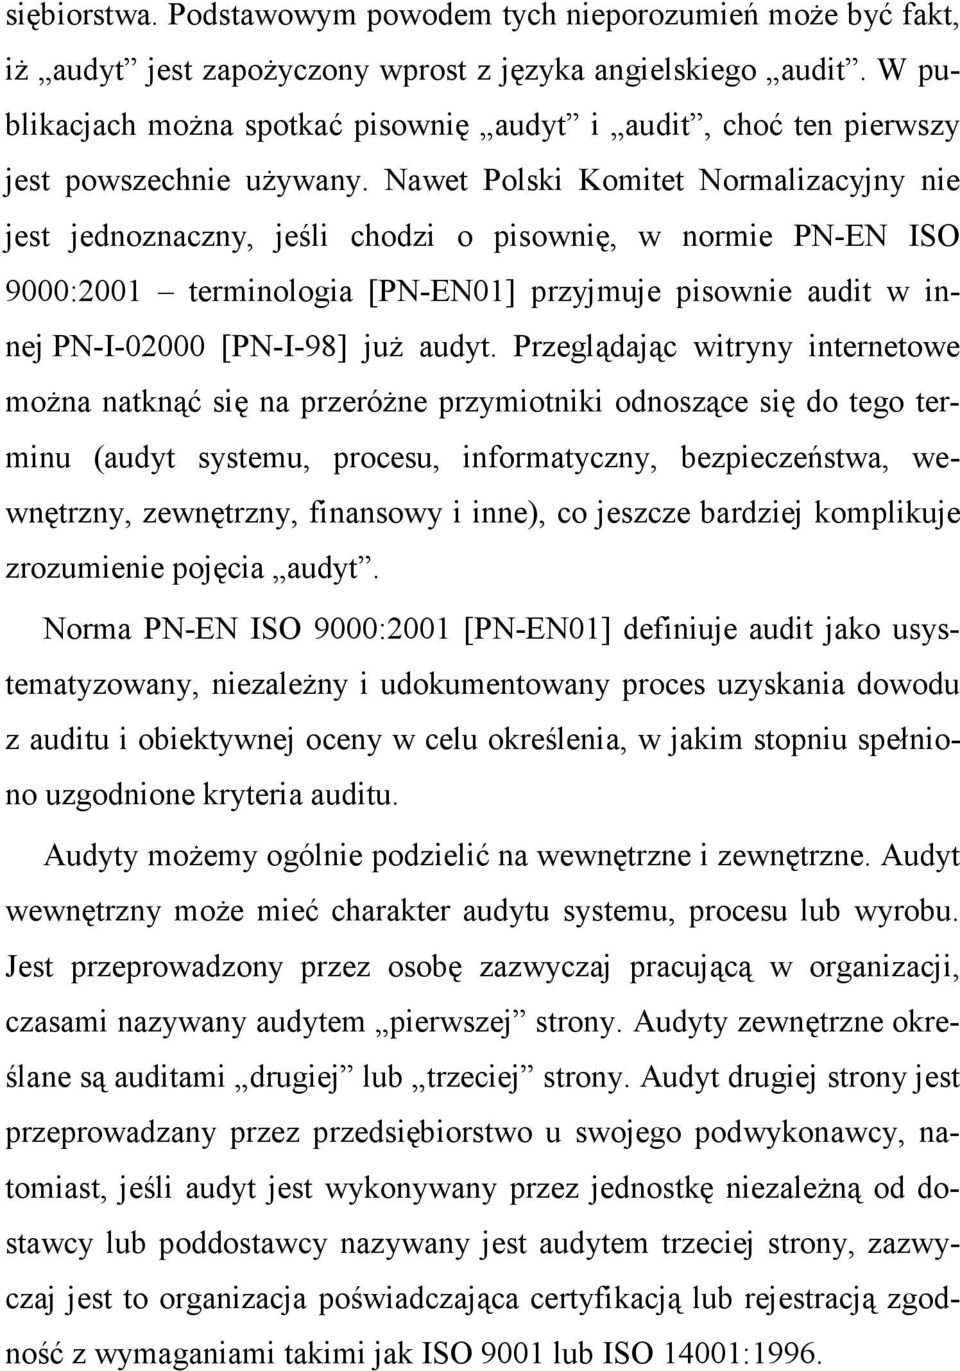 Nawet Polski Komitet Normalizacyjny nie jest jednoznaczny, jeśli chodzi o pisownię, w normie PN-EN ISO 9000:2001 terminologia [PN-EN01] przyjmuje pisownie audit w innej PN-I-02000 [PN-I-98] juŝ audyt.